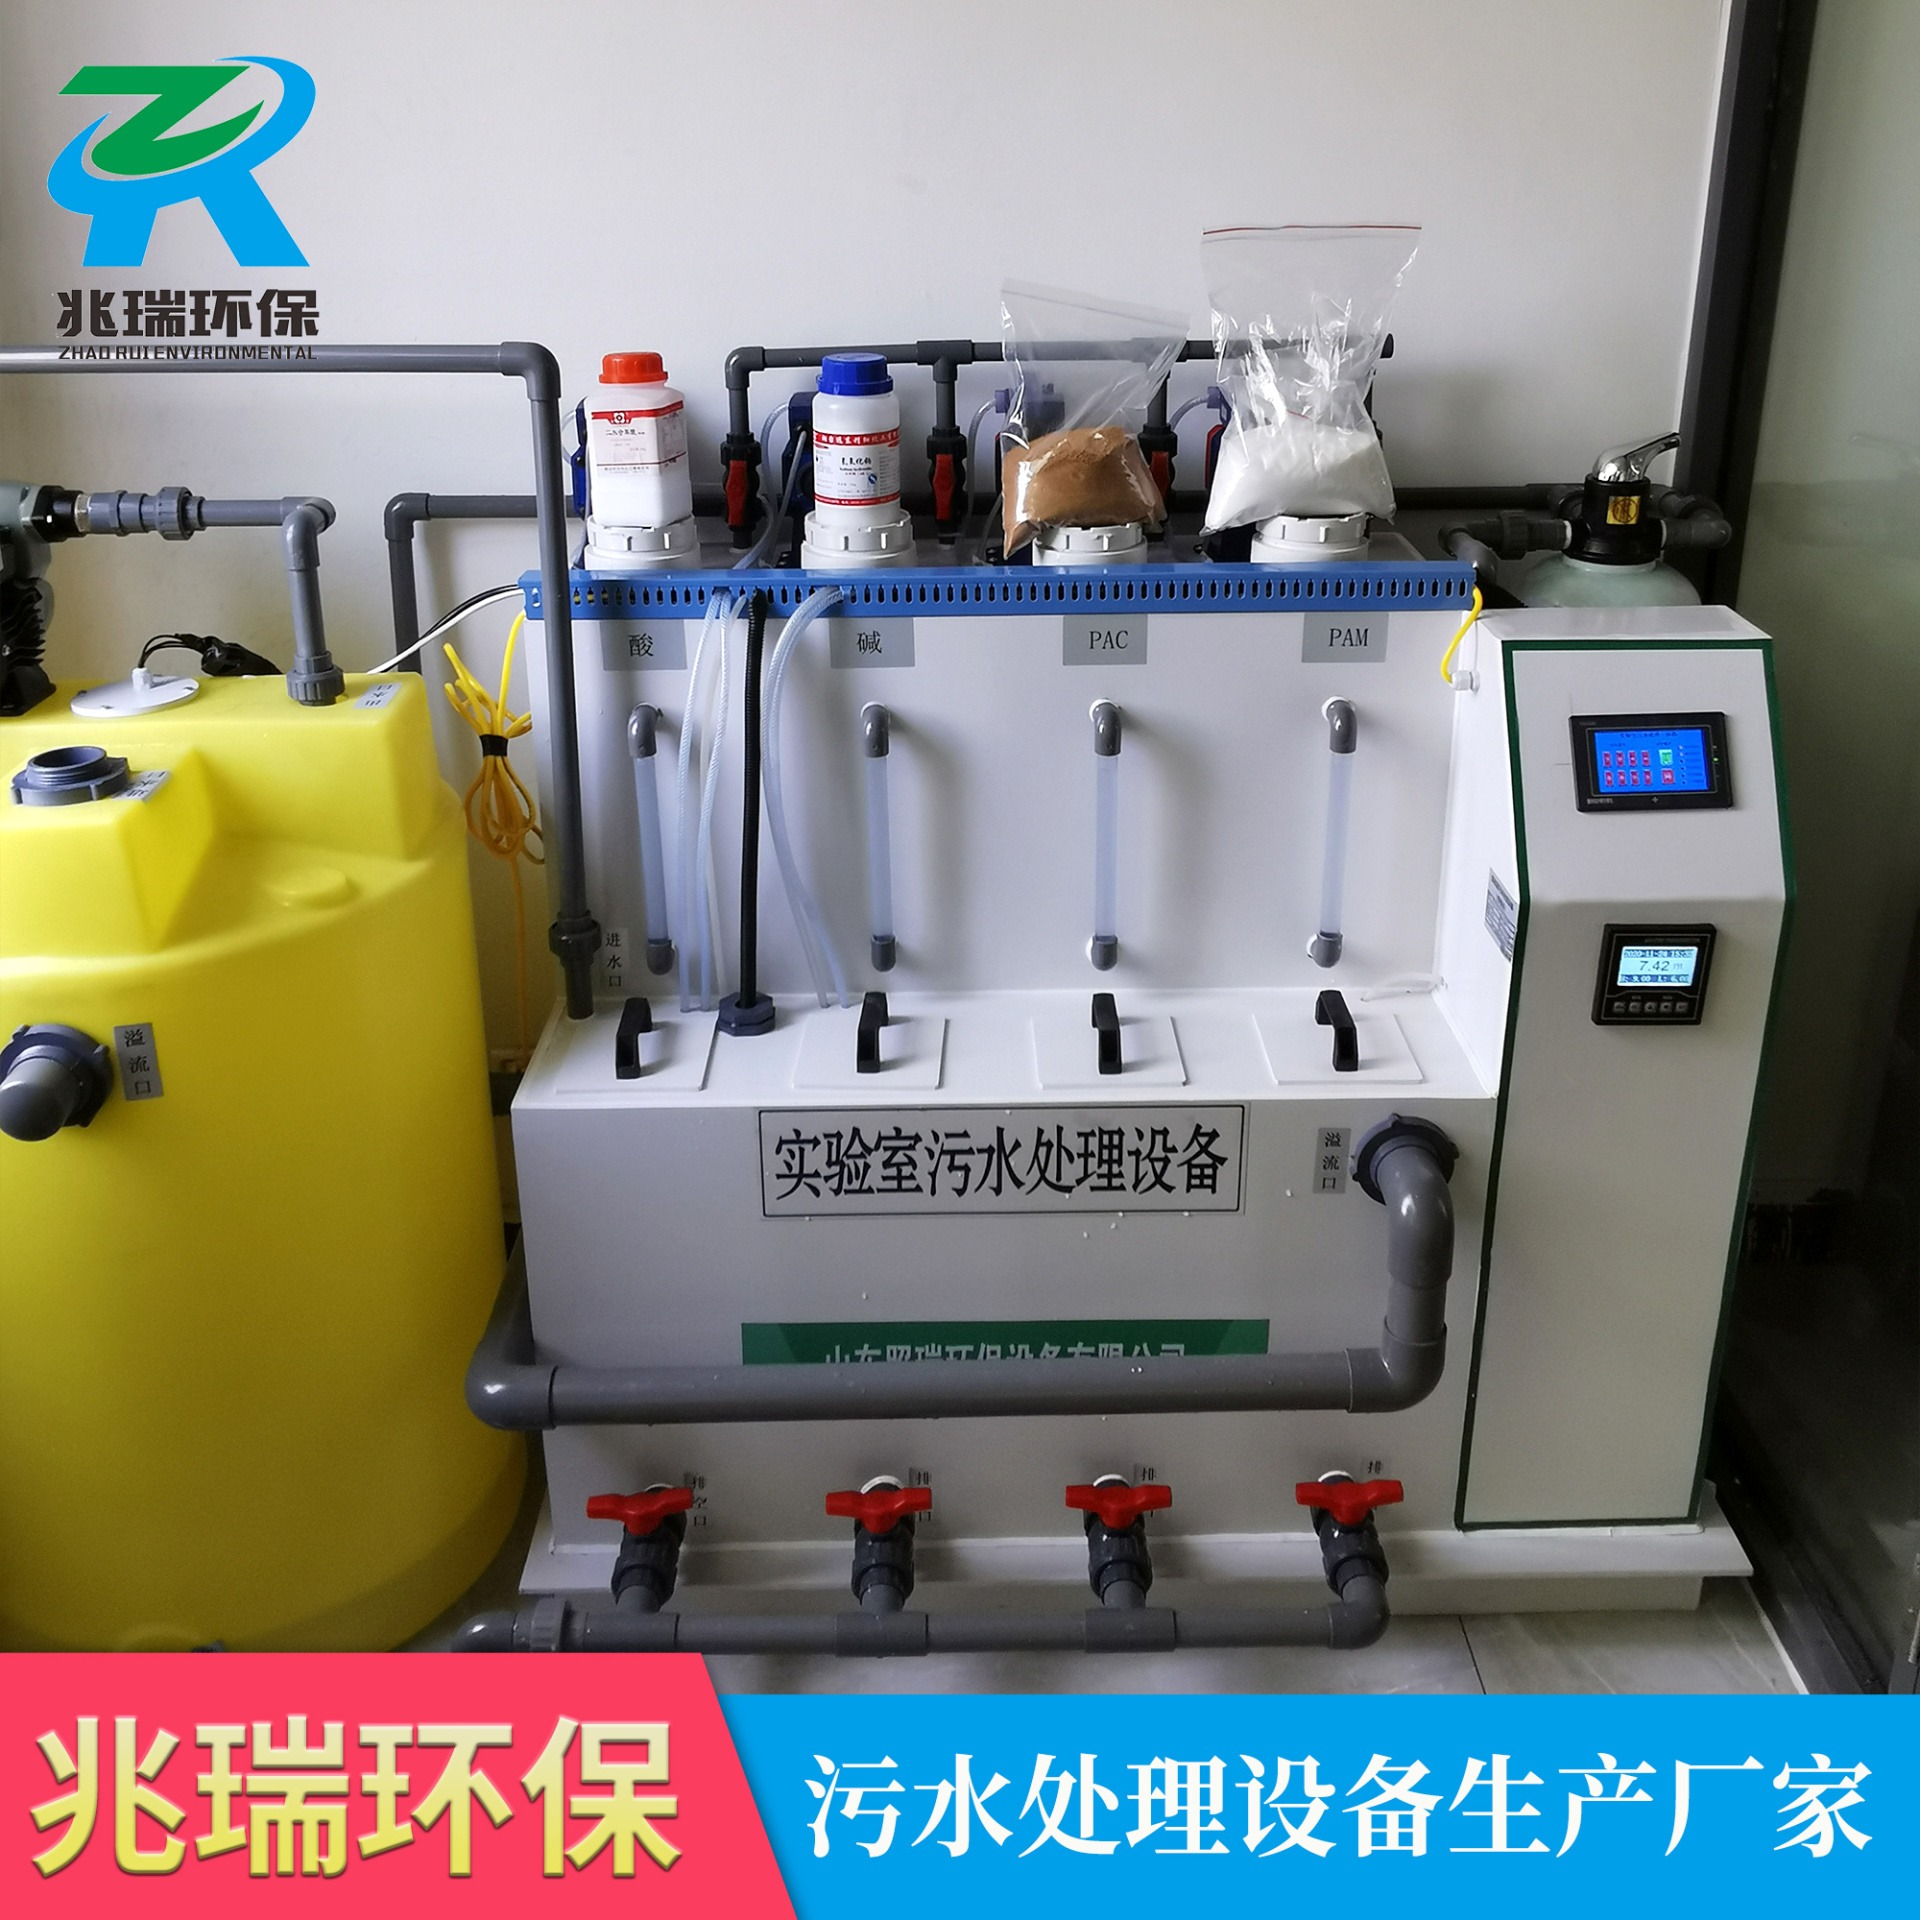 实验室废水处理一体化设备  实验室废水综合处理设备 ZR-SYS10 兆瑞环保厂家直销